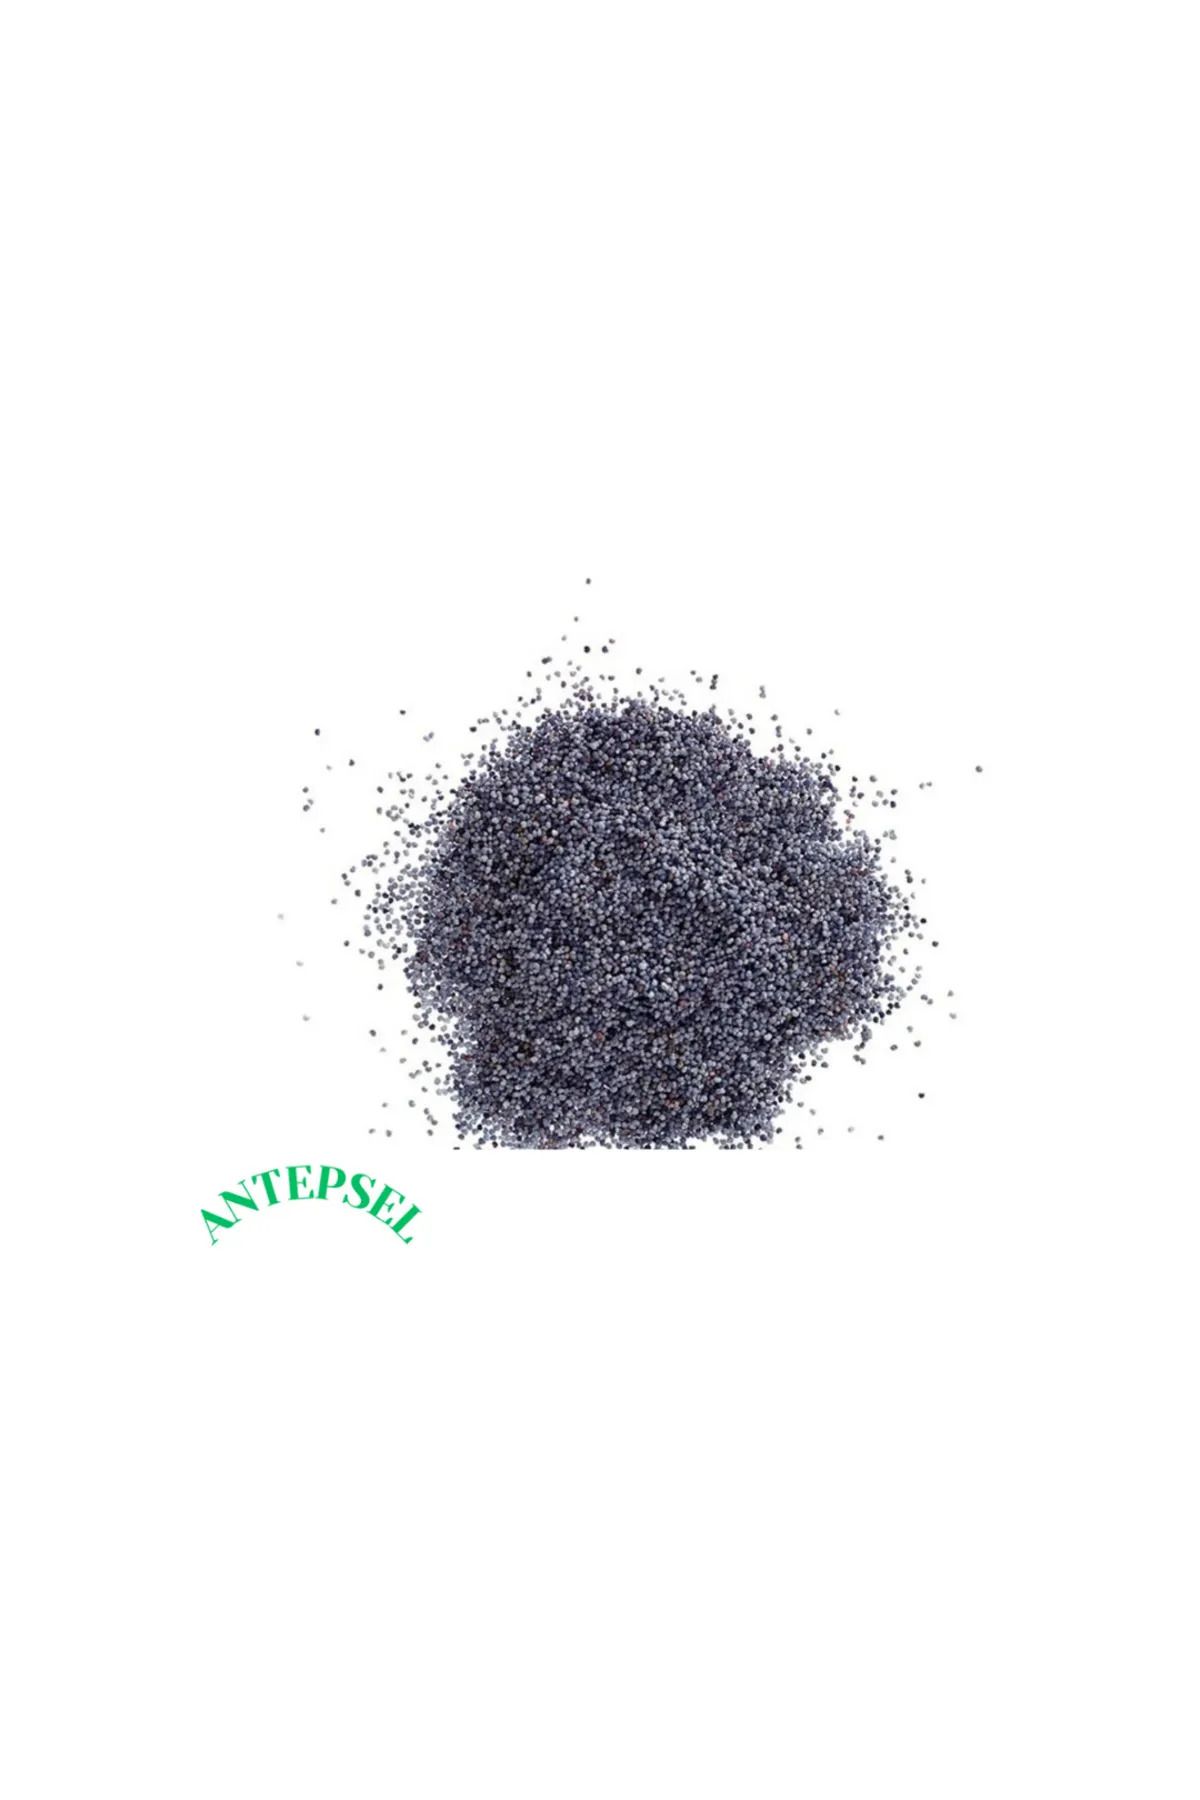 antepsel Mavi Haşhaş (250 gram)